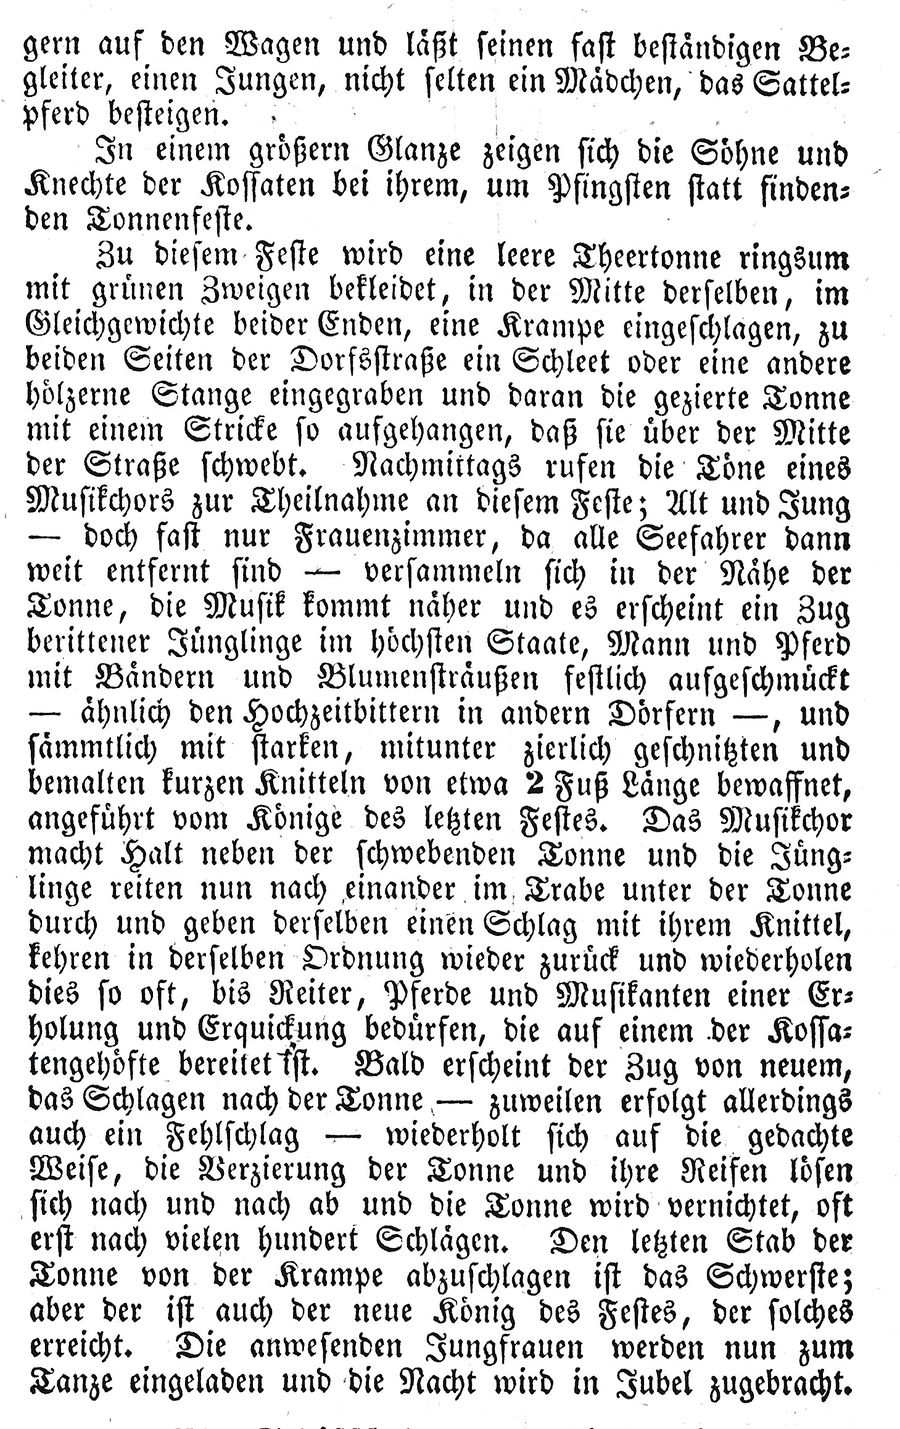 Halbins Fischl 1832 14